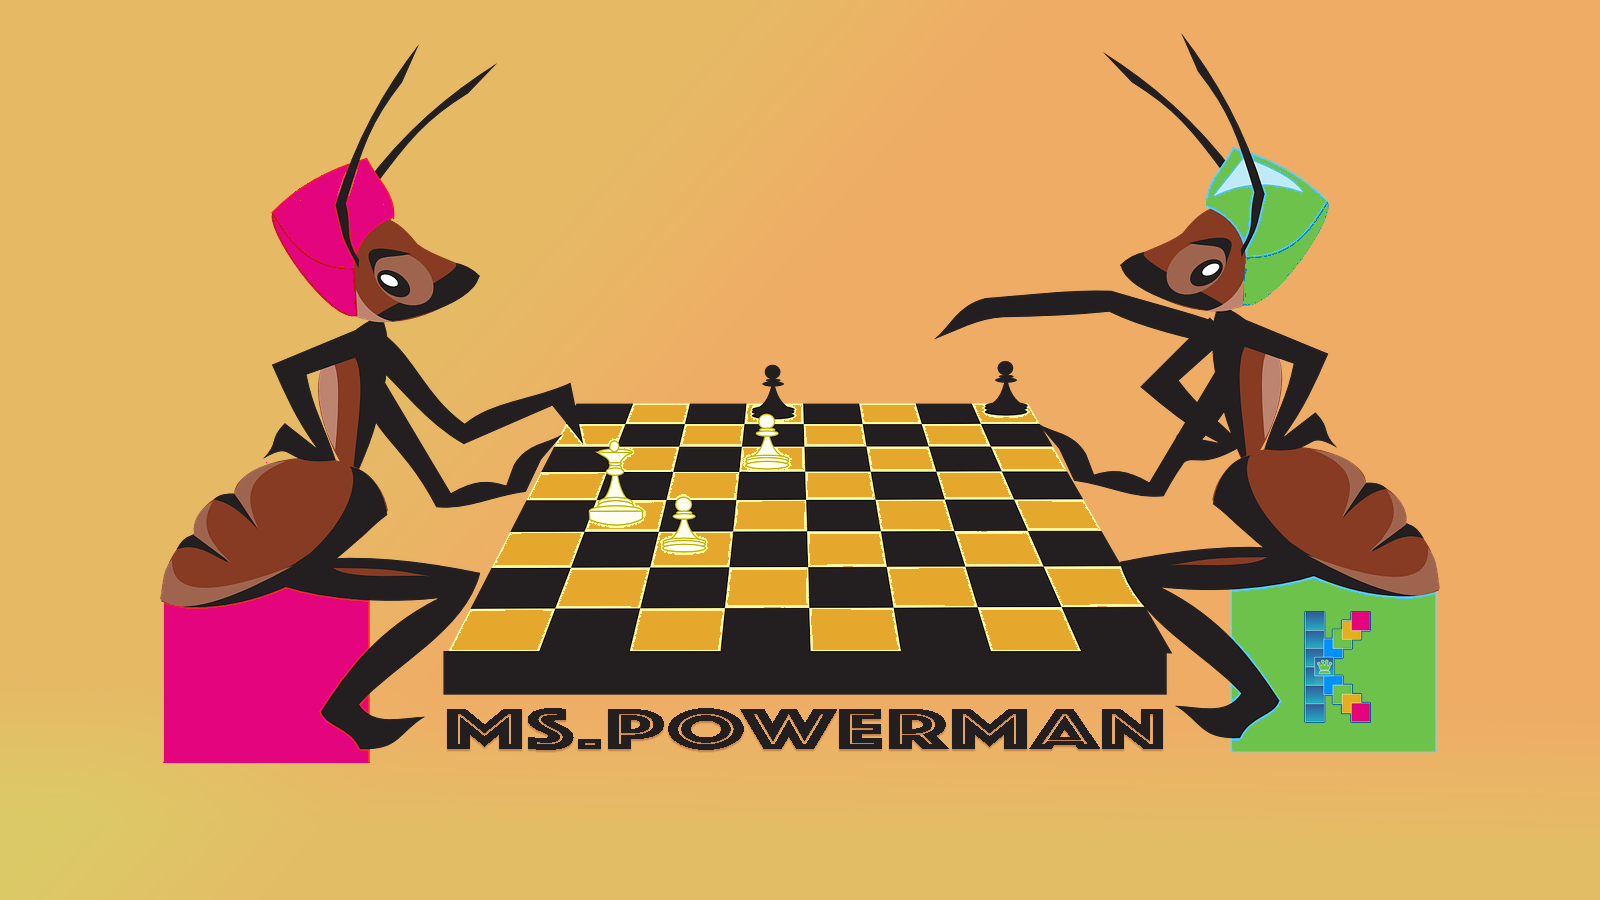 ms.powerman